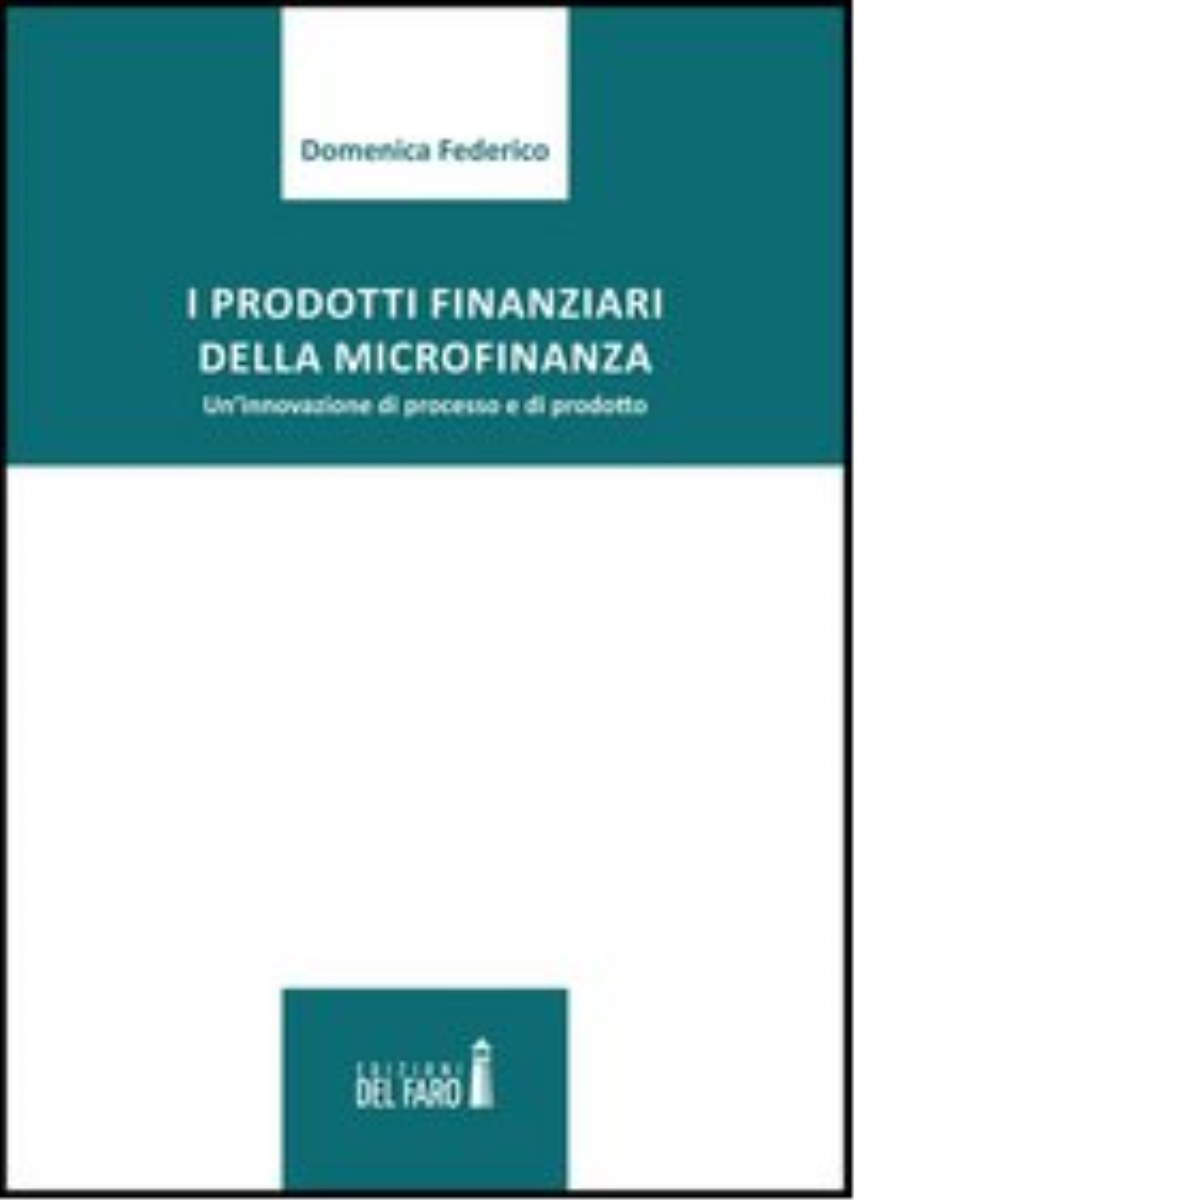 I prodotti finanziari della microfinanza di Federico Domenica - Del Faro, 2022